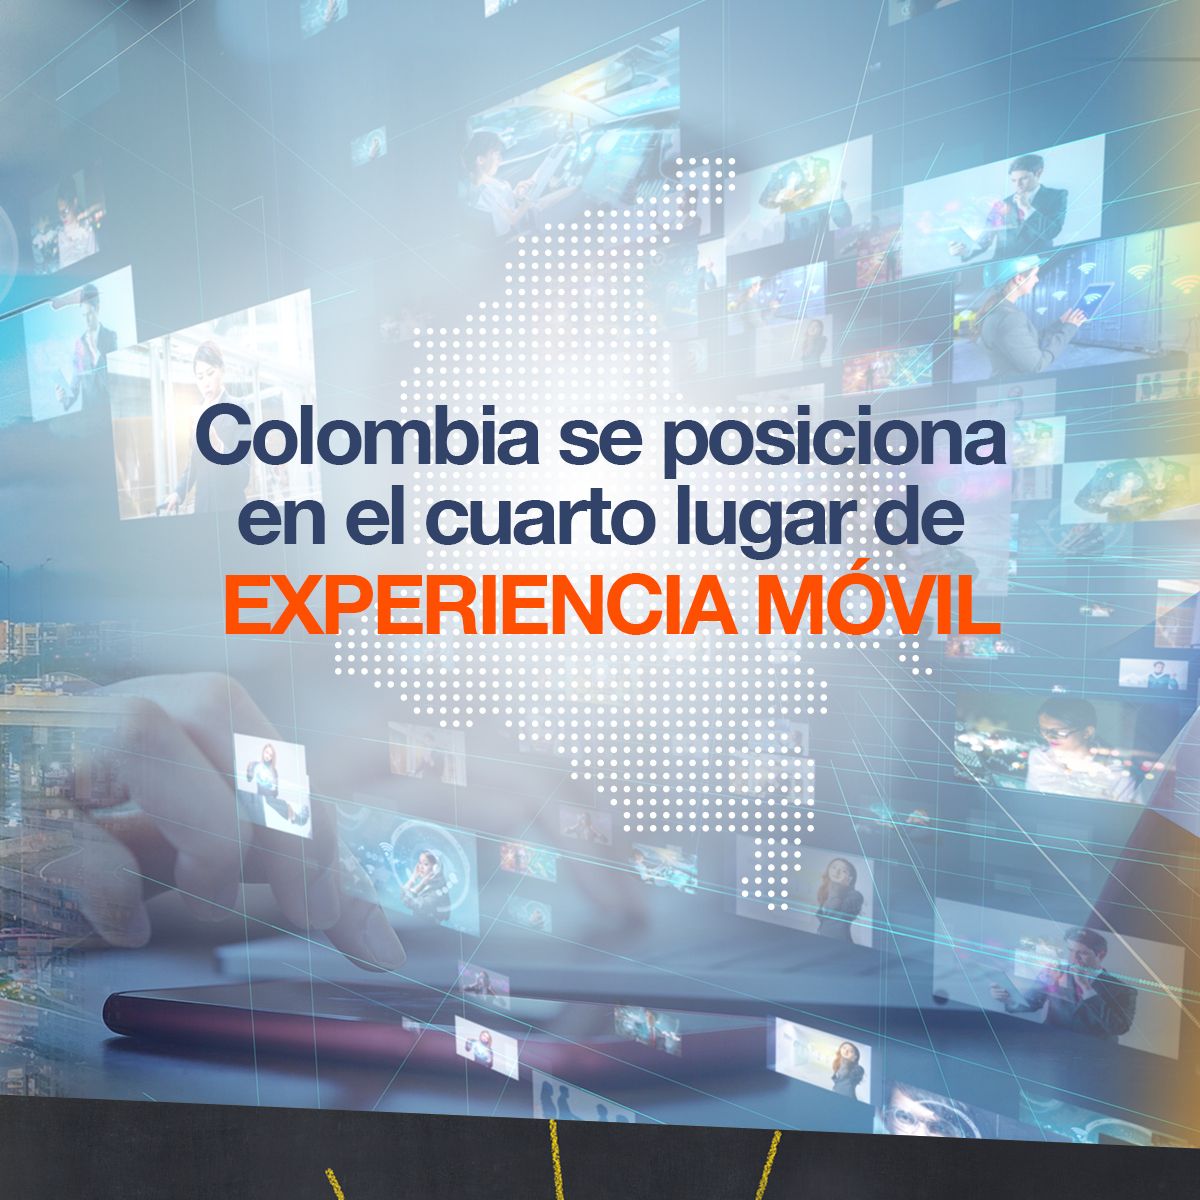 Colombia se posiciona en el cuarto lugar de experiencia móvil